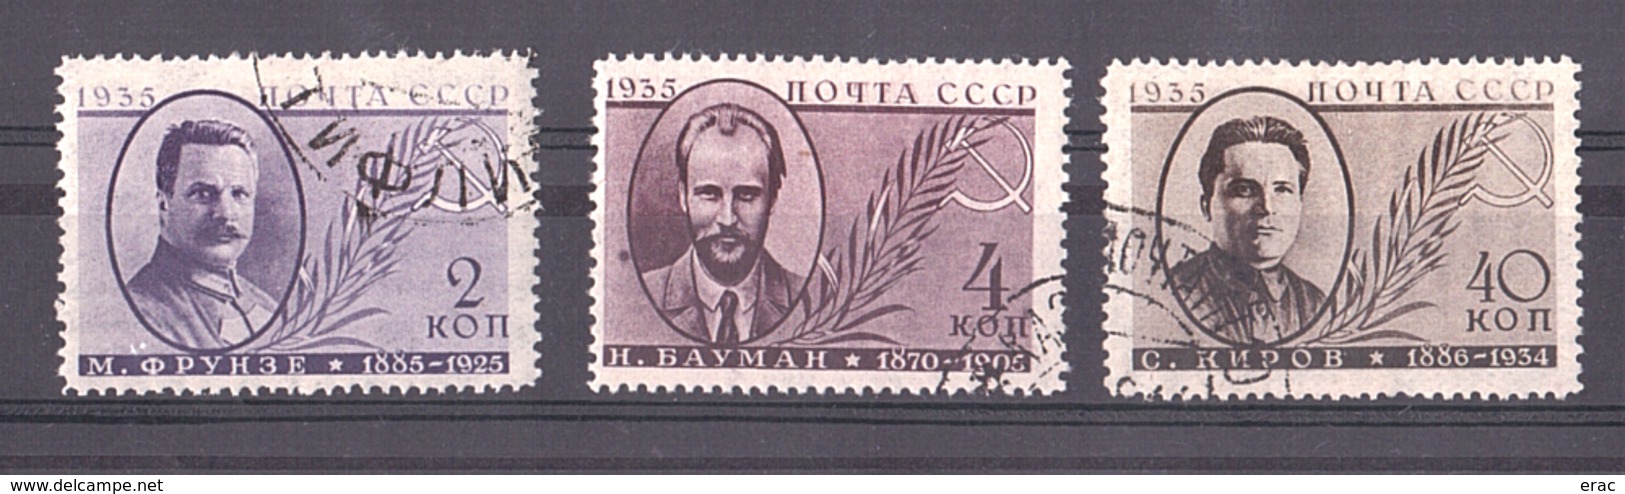 URSS - 1935 - N° 580 à 582 - Révolutionnaires - Oblitérés